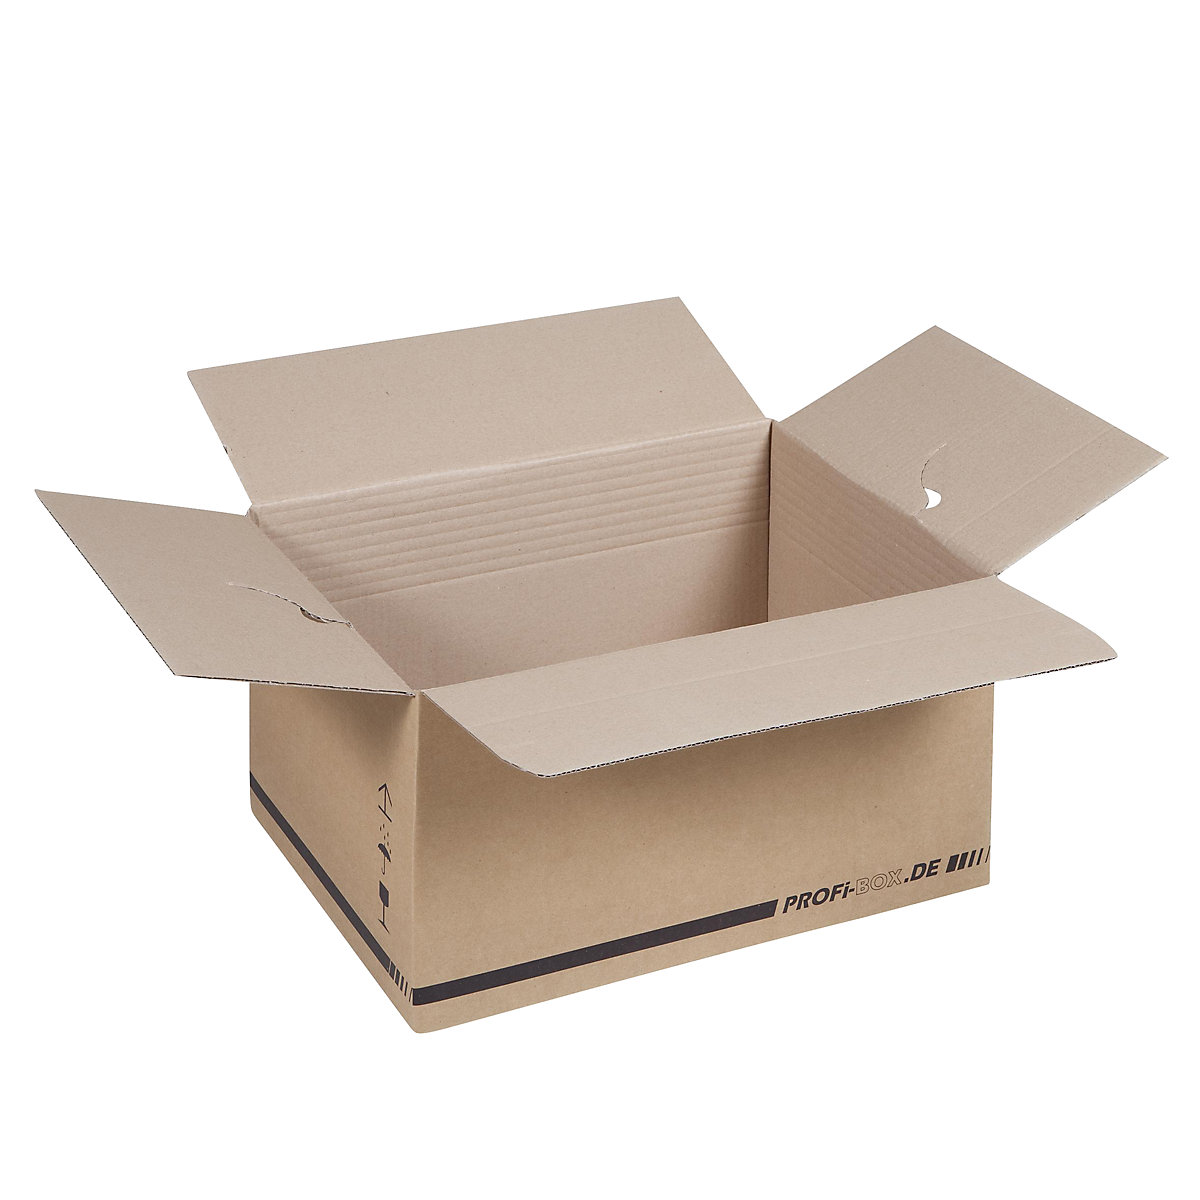 Profi-Boxen, aus 1-welliger Pappe, FEFCO 0701, Innenmaße 445 x 315 x 235 mm, VE 50 Stk-8